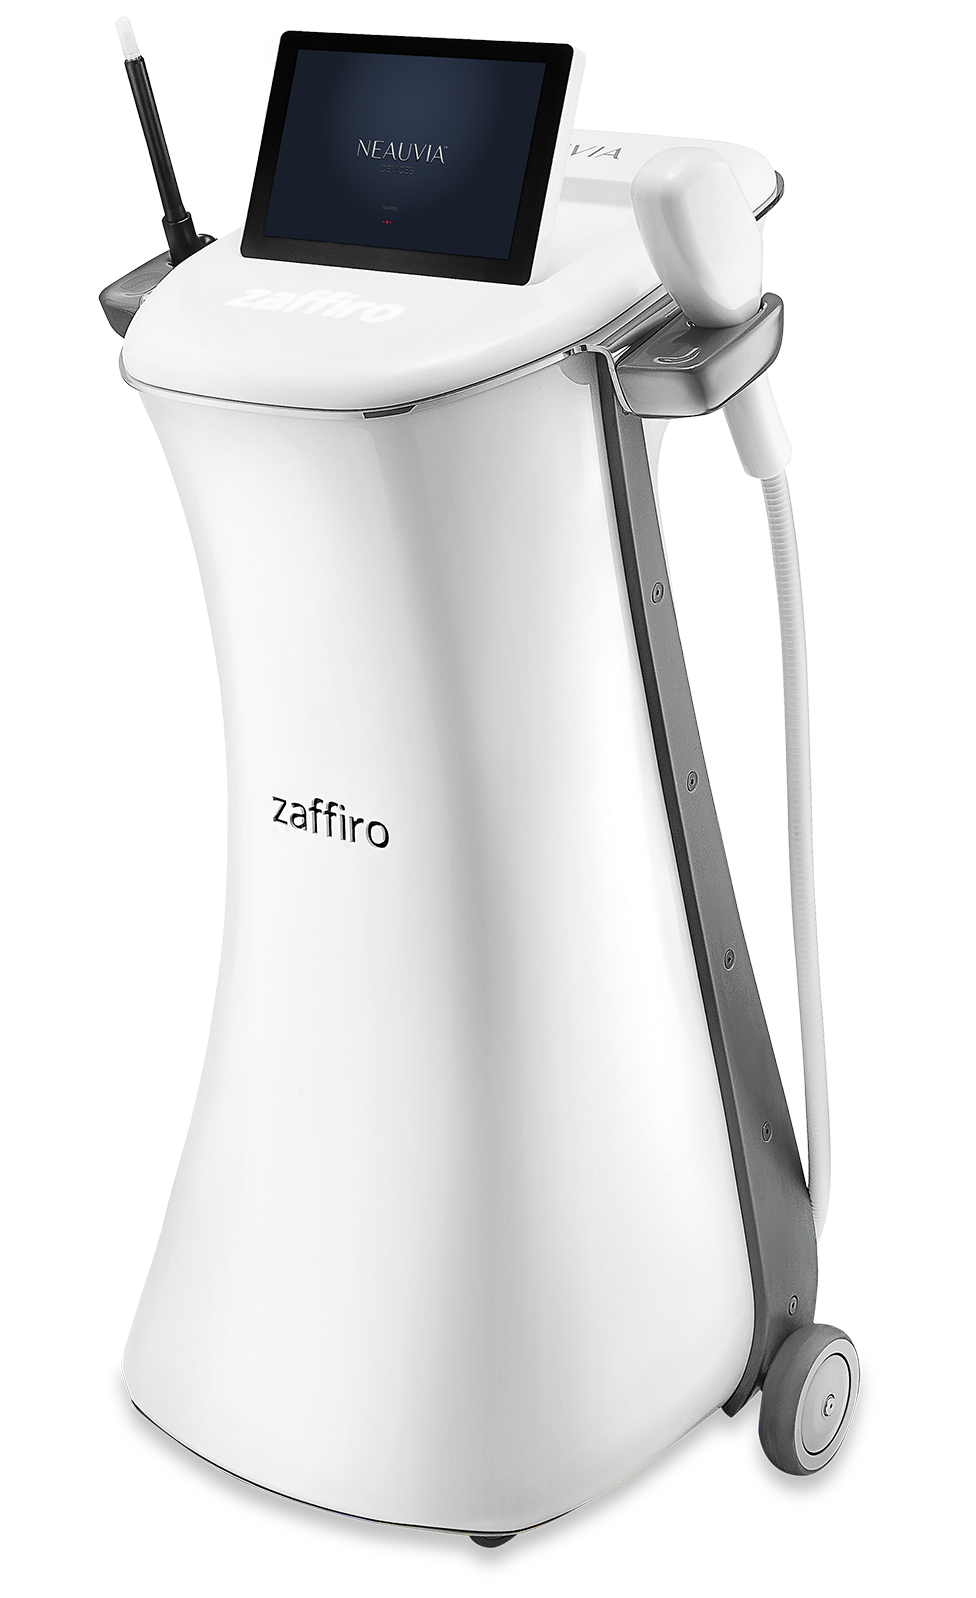 ZAFFIRO ist ein innovatives Medizinprodukt, das Hydro-Peeling und Infrarotthermolifting kombiniert, um die Haut zu straffen und zu festigen.